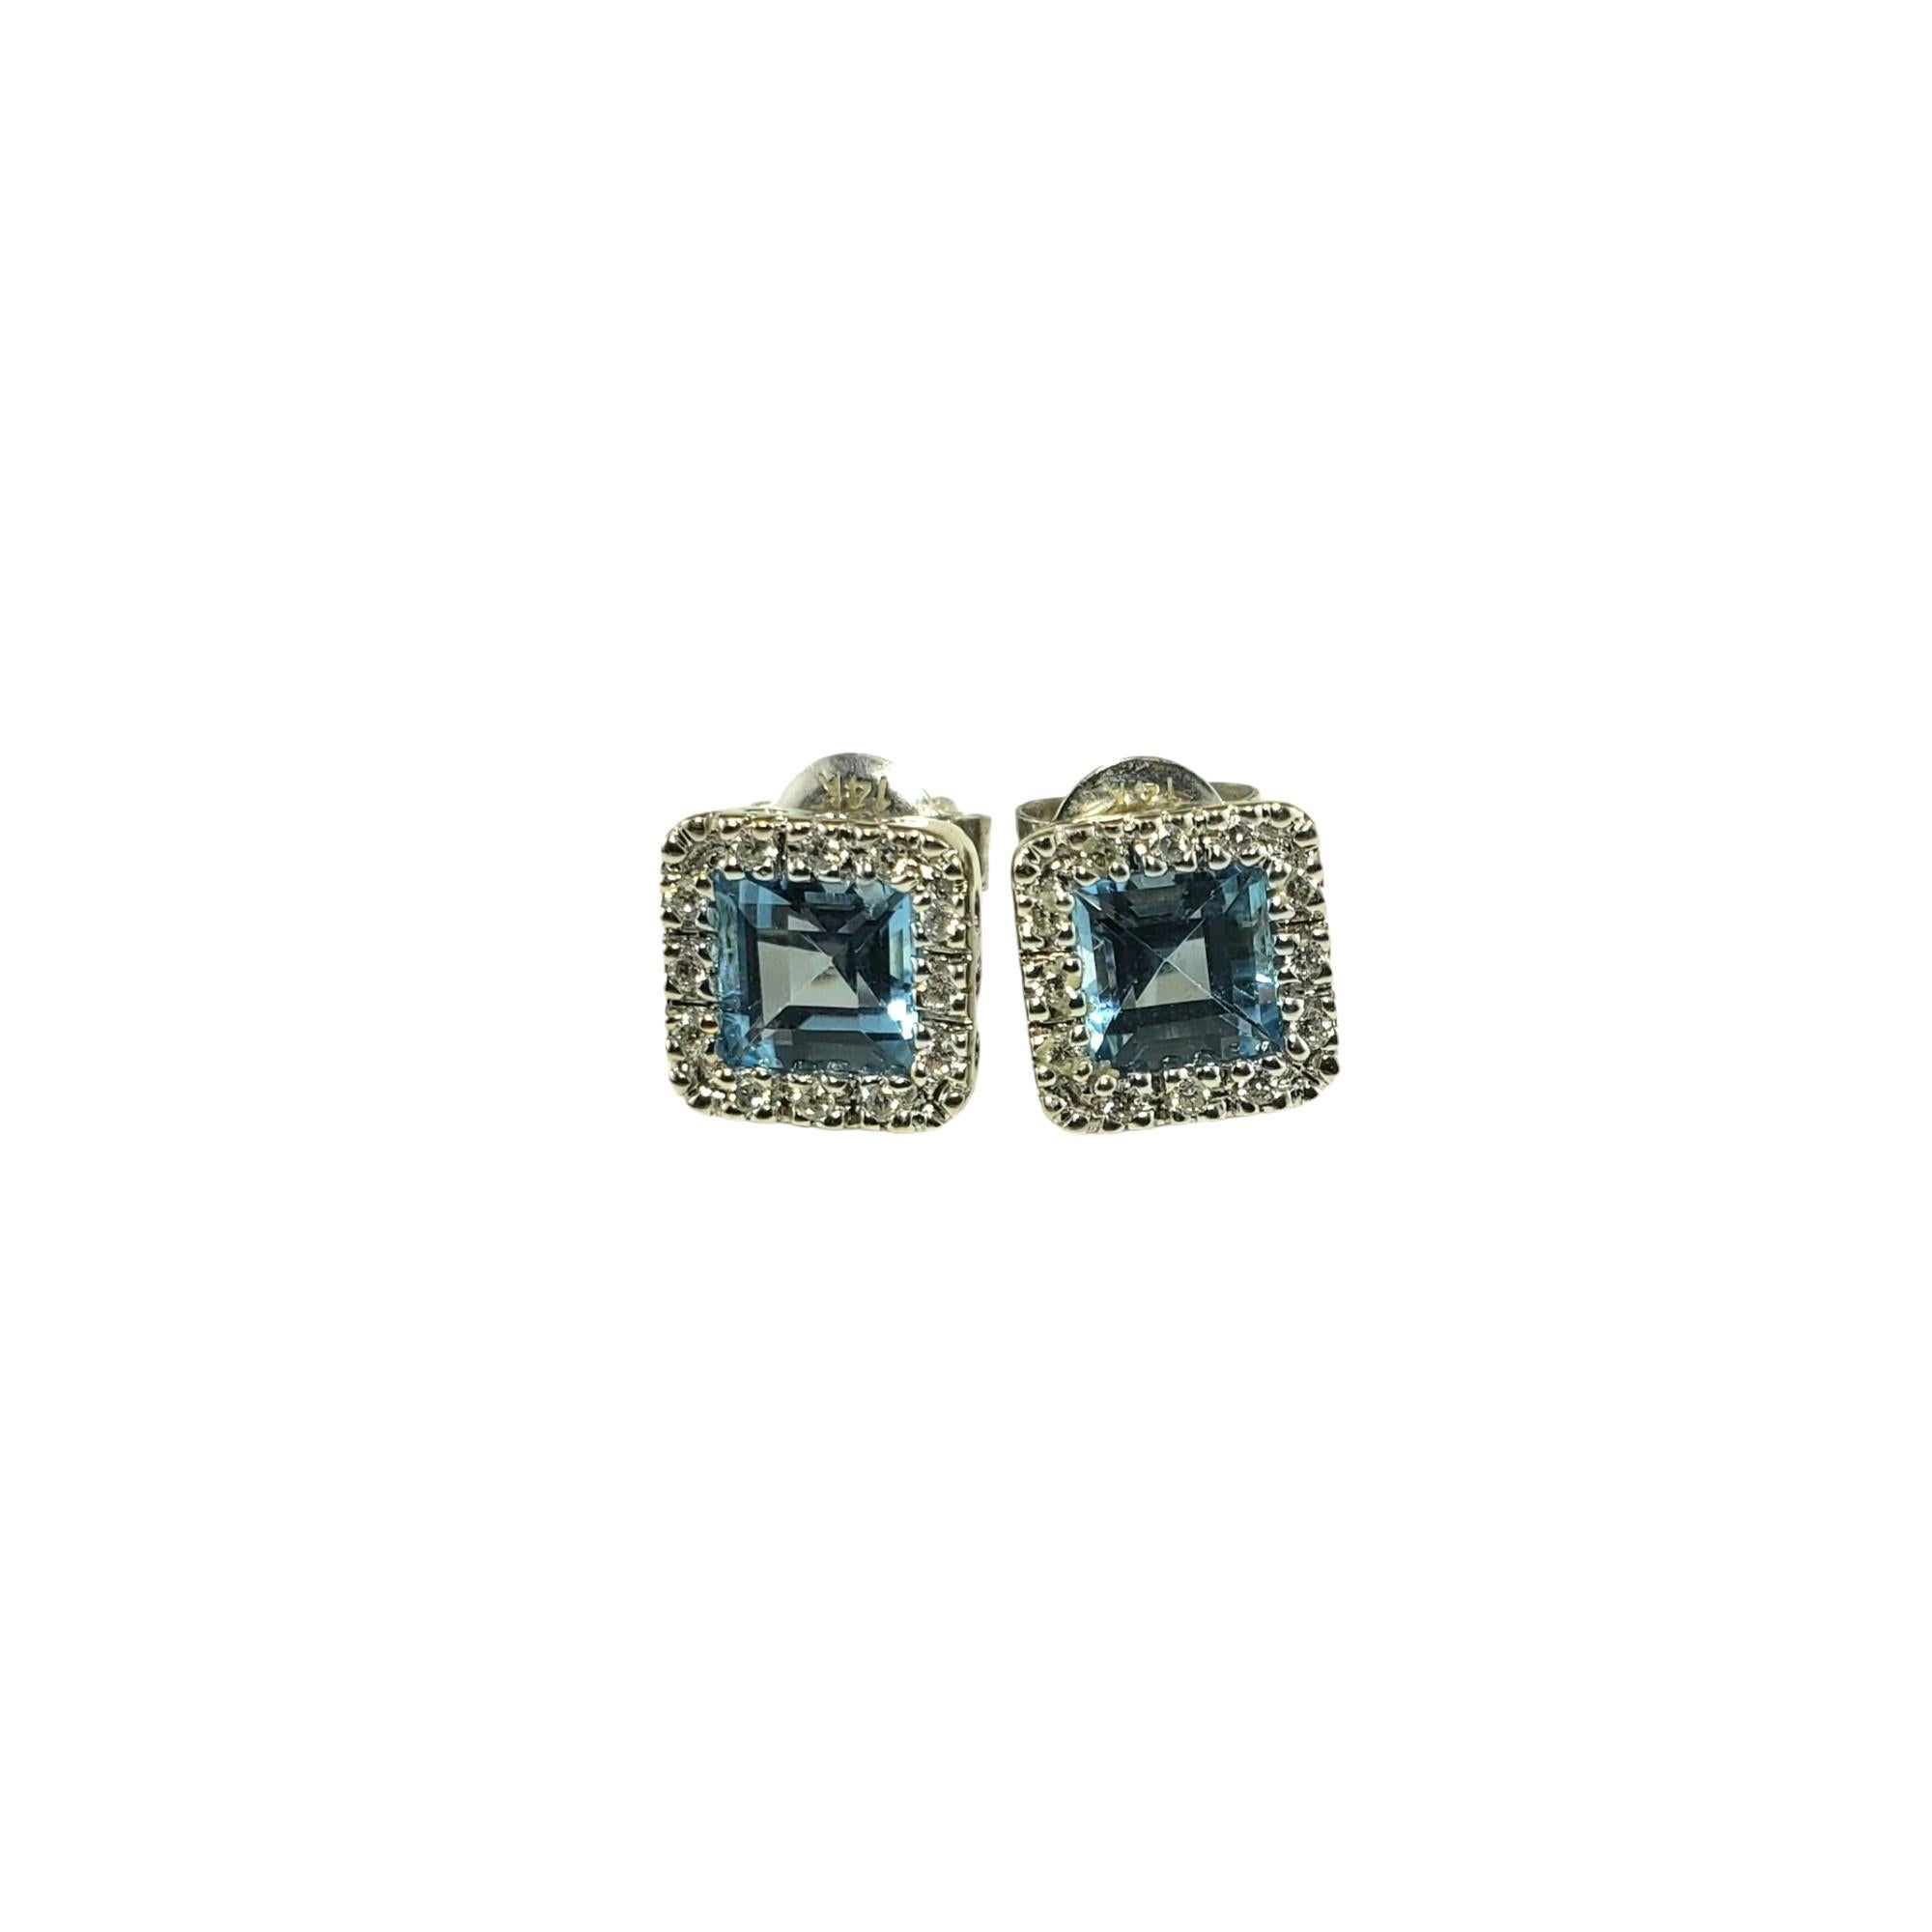 Vintage 14K Weißgold Blauer Topas und Diamant-Ohrringe Labor zertifiziert-

Diese atemberaubenden Ohrringe bestehen aus je einem Blautopas im Quadratschliff (5 mm x 5 mm) und 24 runden Diamanten im Brillantschliff, gefasst in klassischem 14 Karat